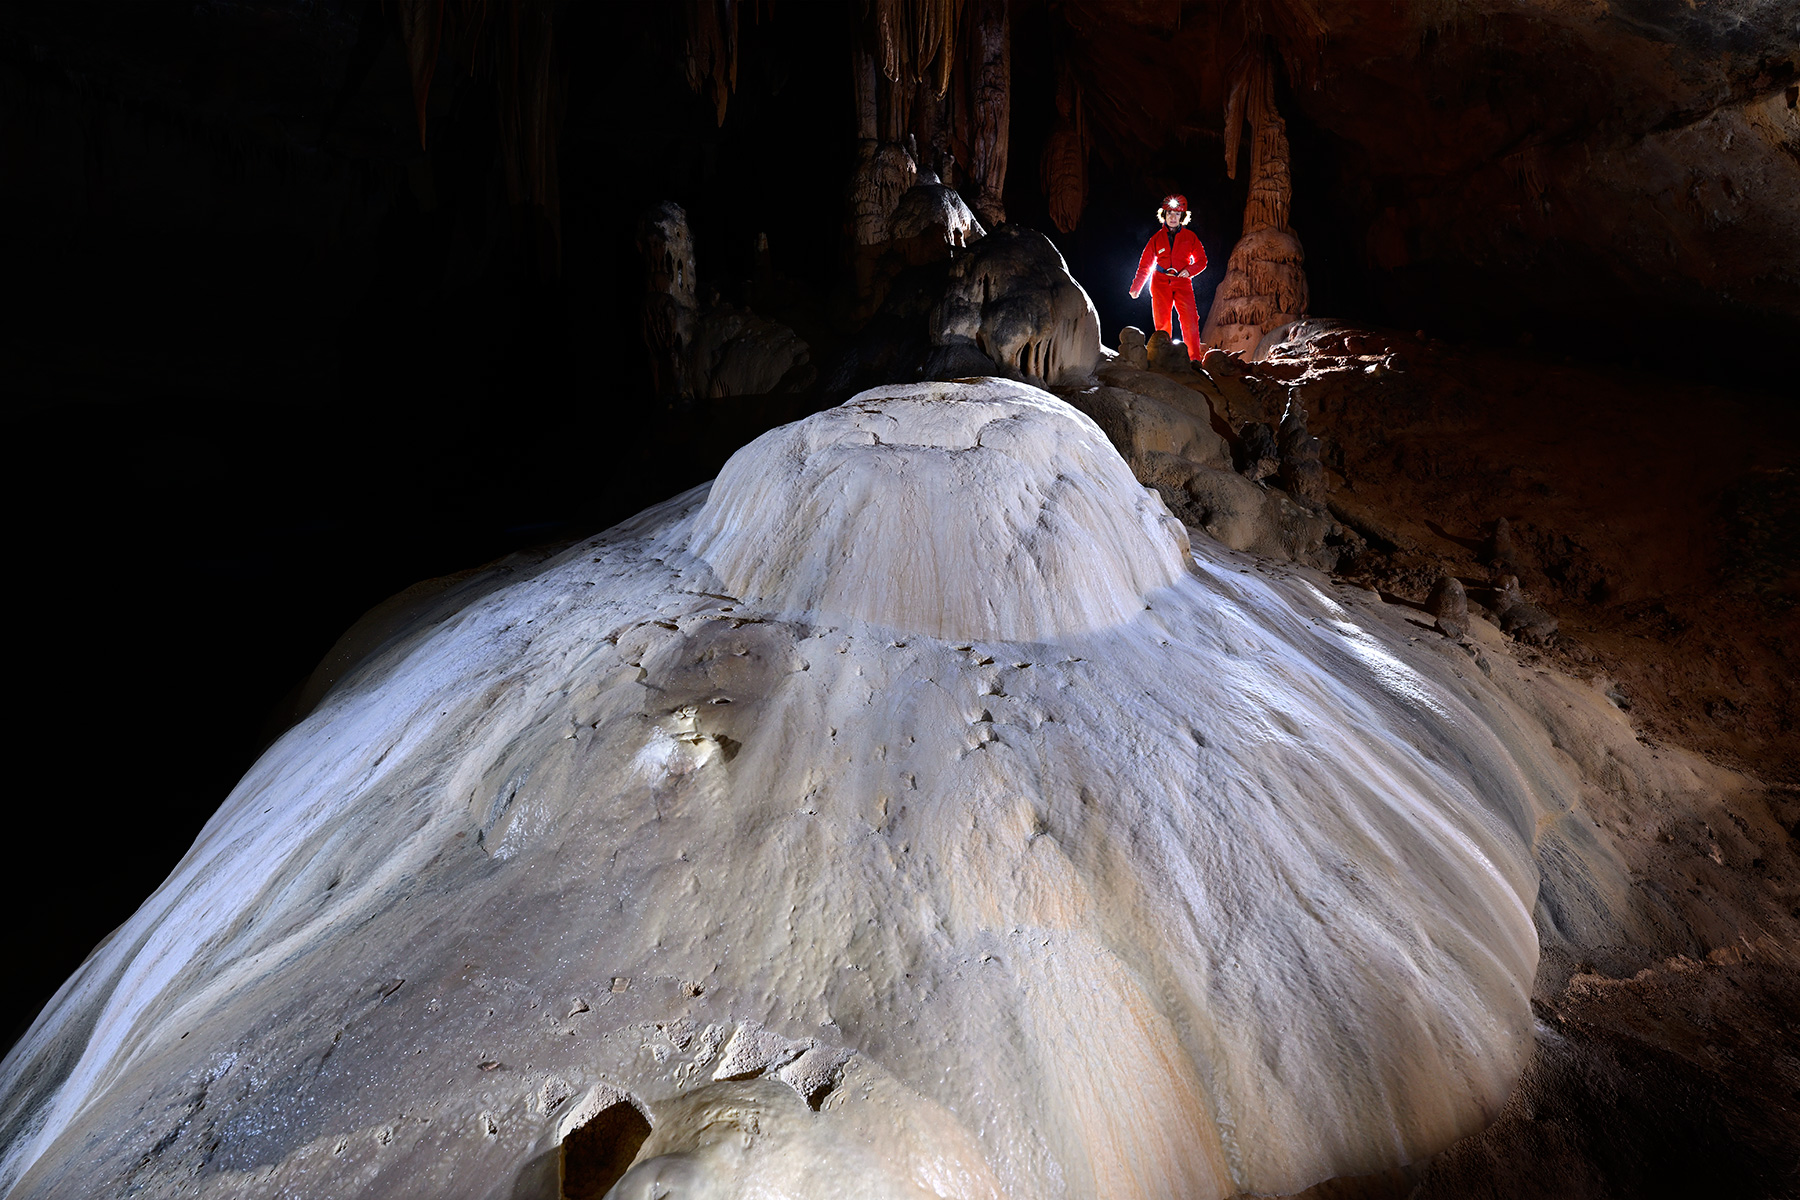 Grotte de Saint-Marcel d'Ardèche (réseau I) - Dôme de calcite blanche